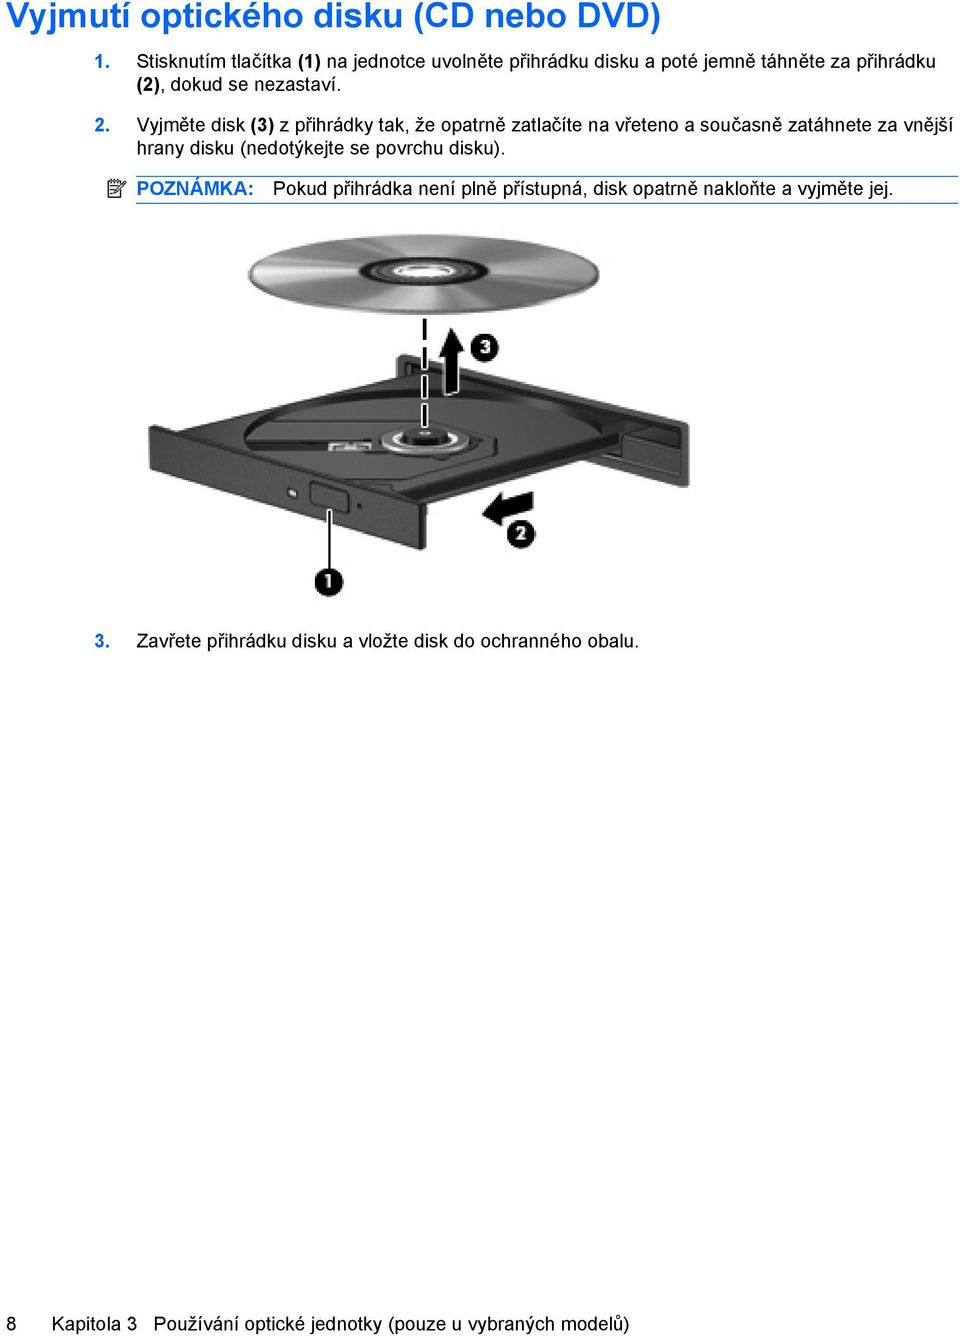 Vyjměte disk (3) z přihrádky tak, že opatrně zatlačíte na vřeteno a současně zatáhnete za vnější hrany disku (nedotýkejte se